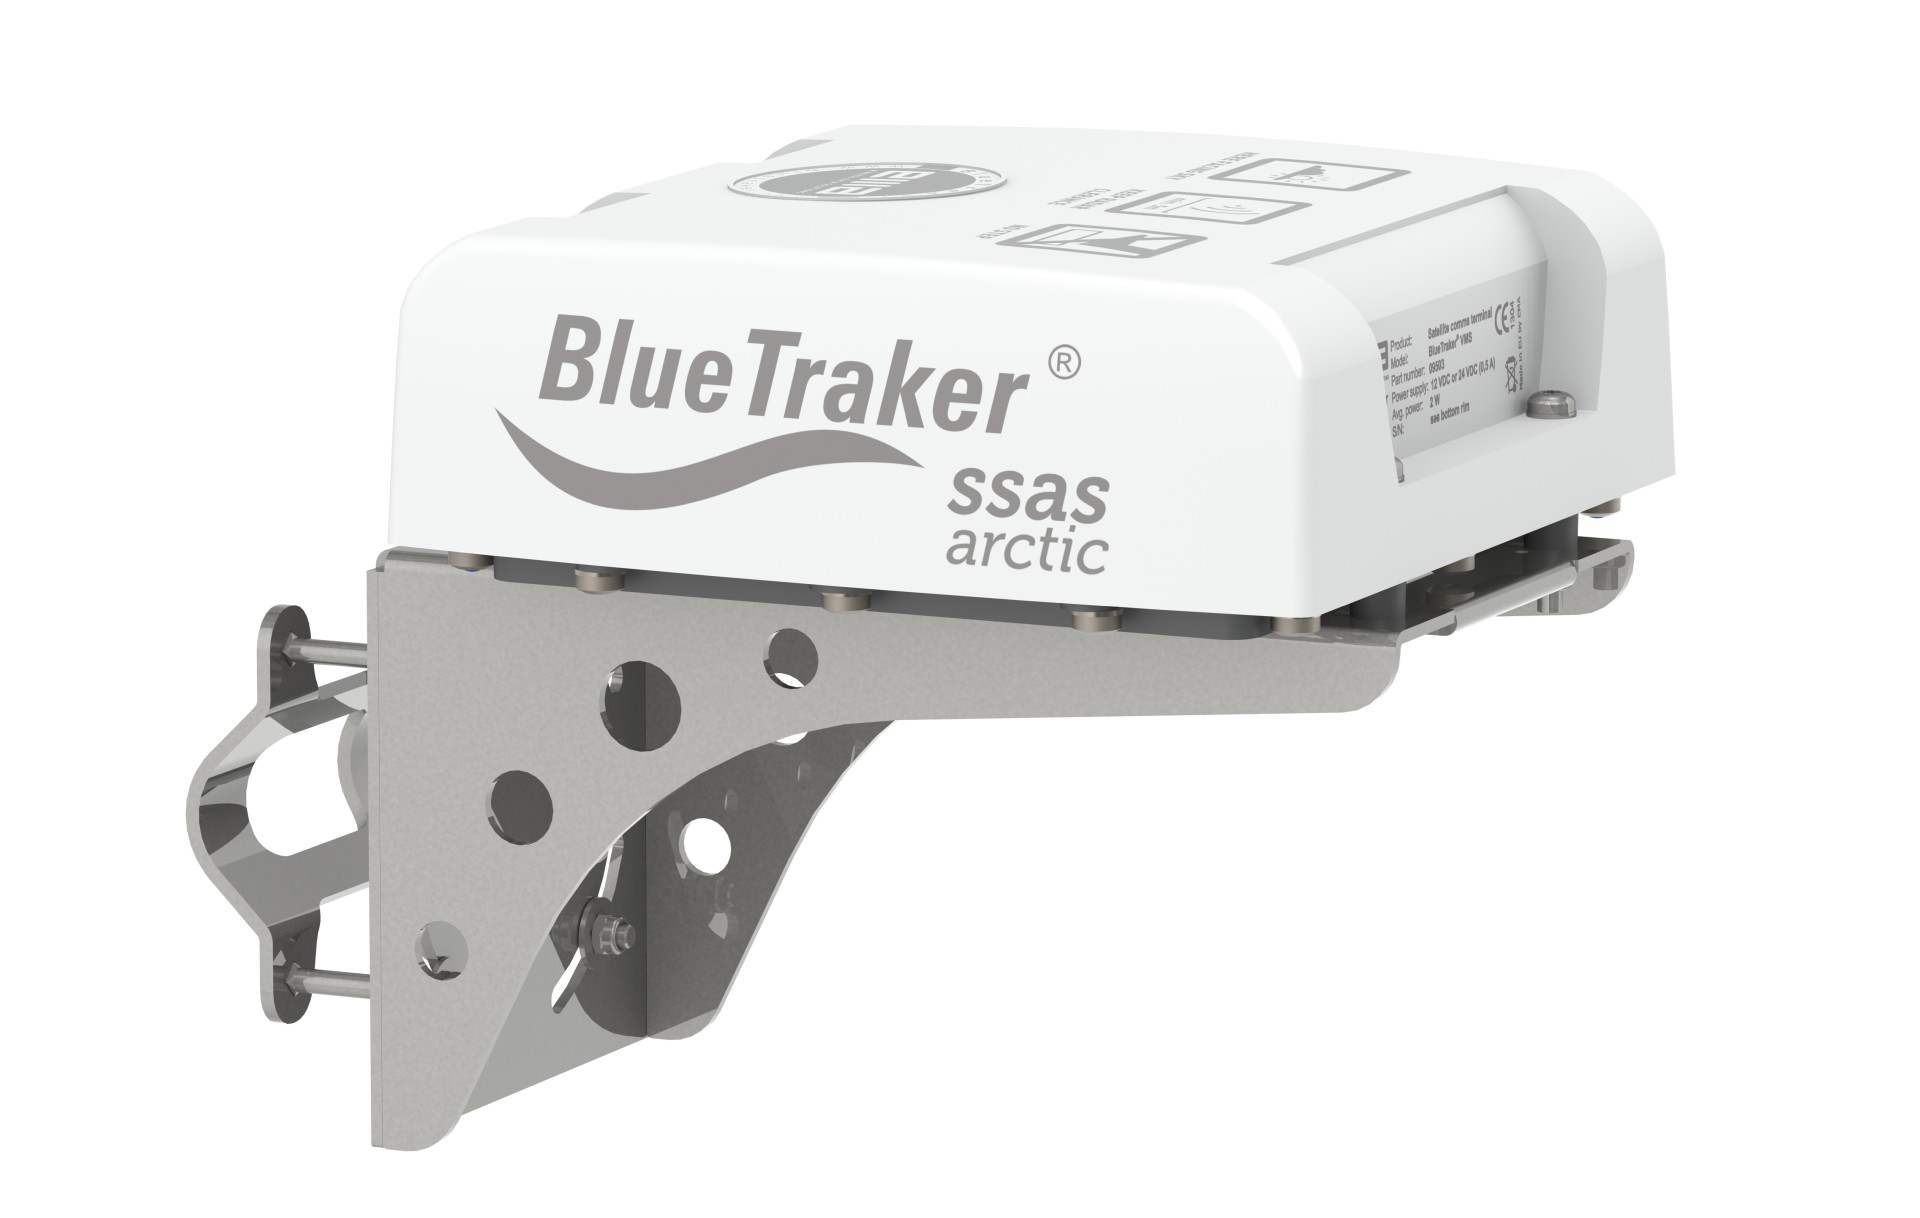 BlueTraker SSAS Artic Product Image